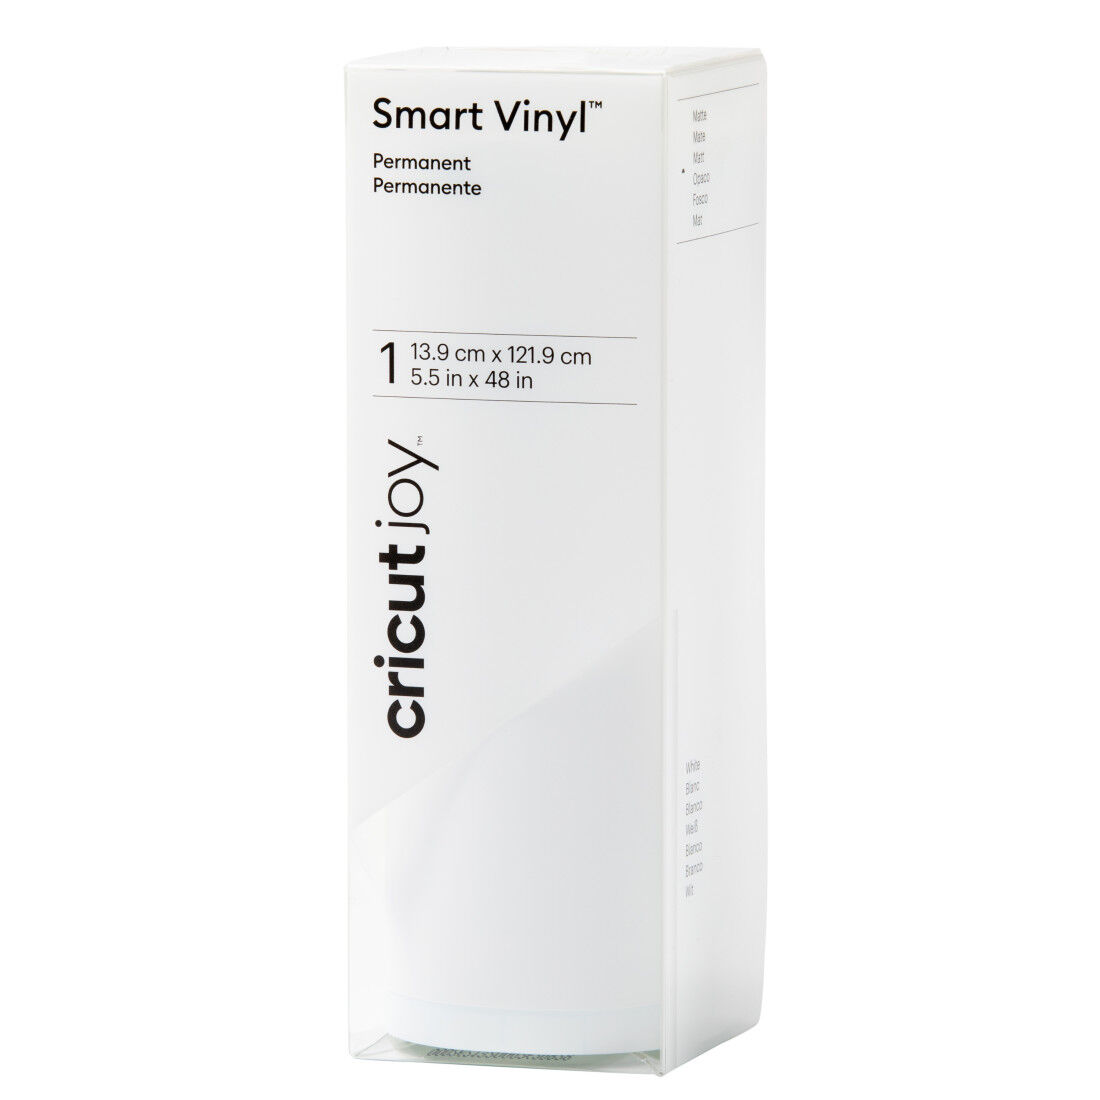 Best Buy: Cricut Smart Vinyl – Permanent 12 ft White 2008936